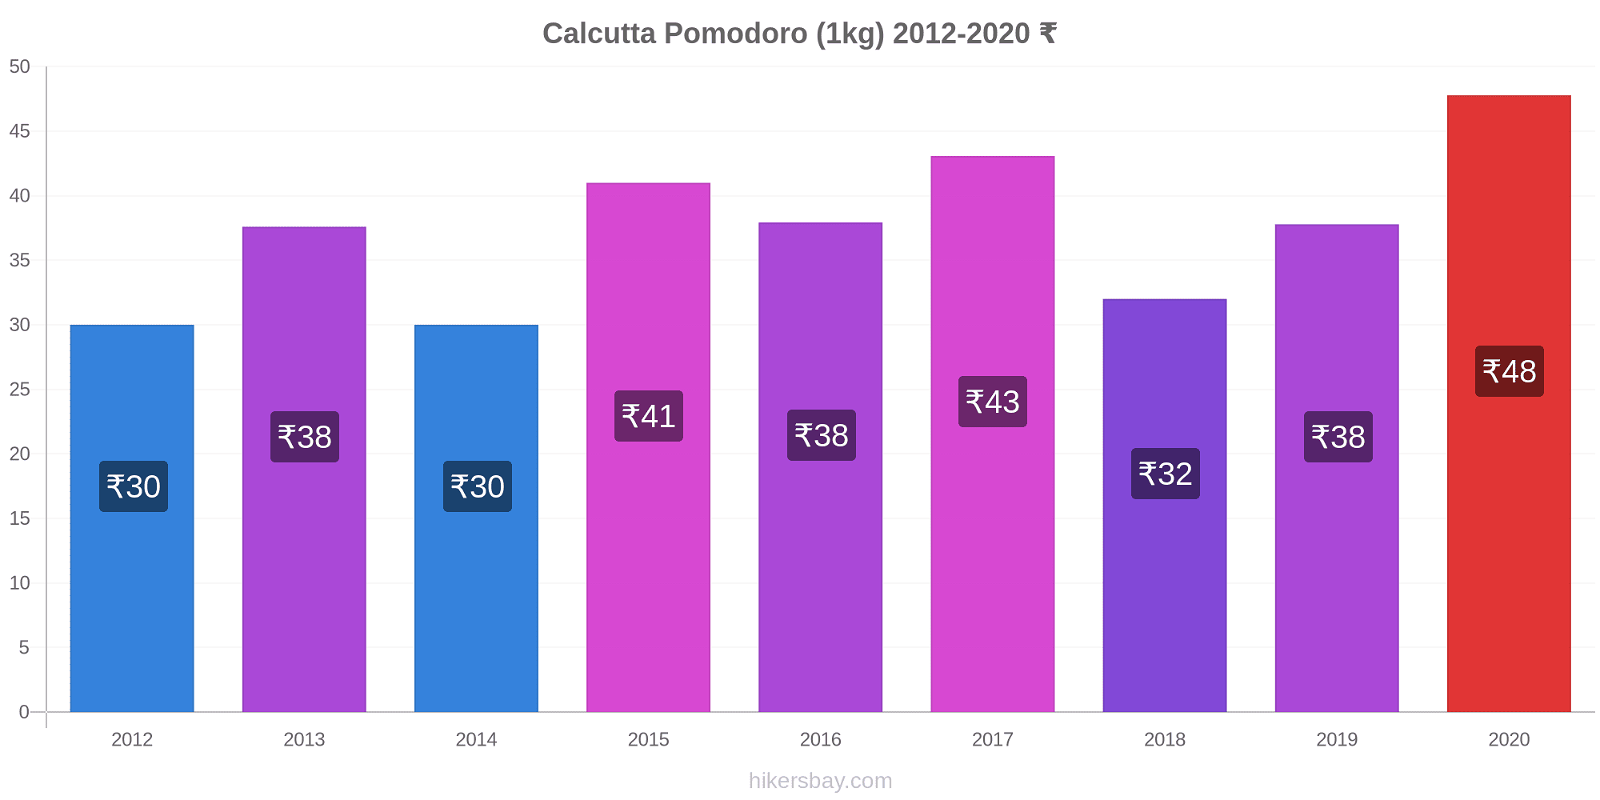 Calcutta variazioni di prezzo Pomodoro (1kg) hikersbay.com